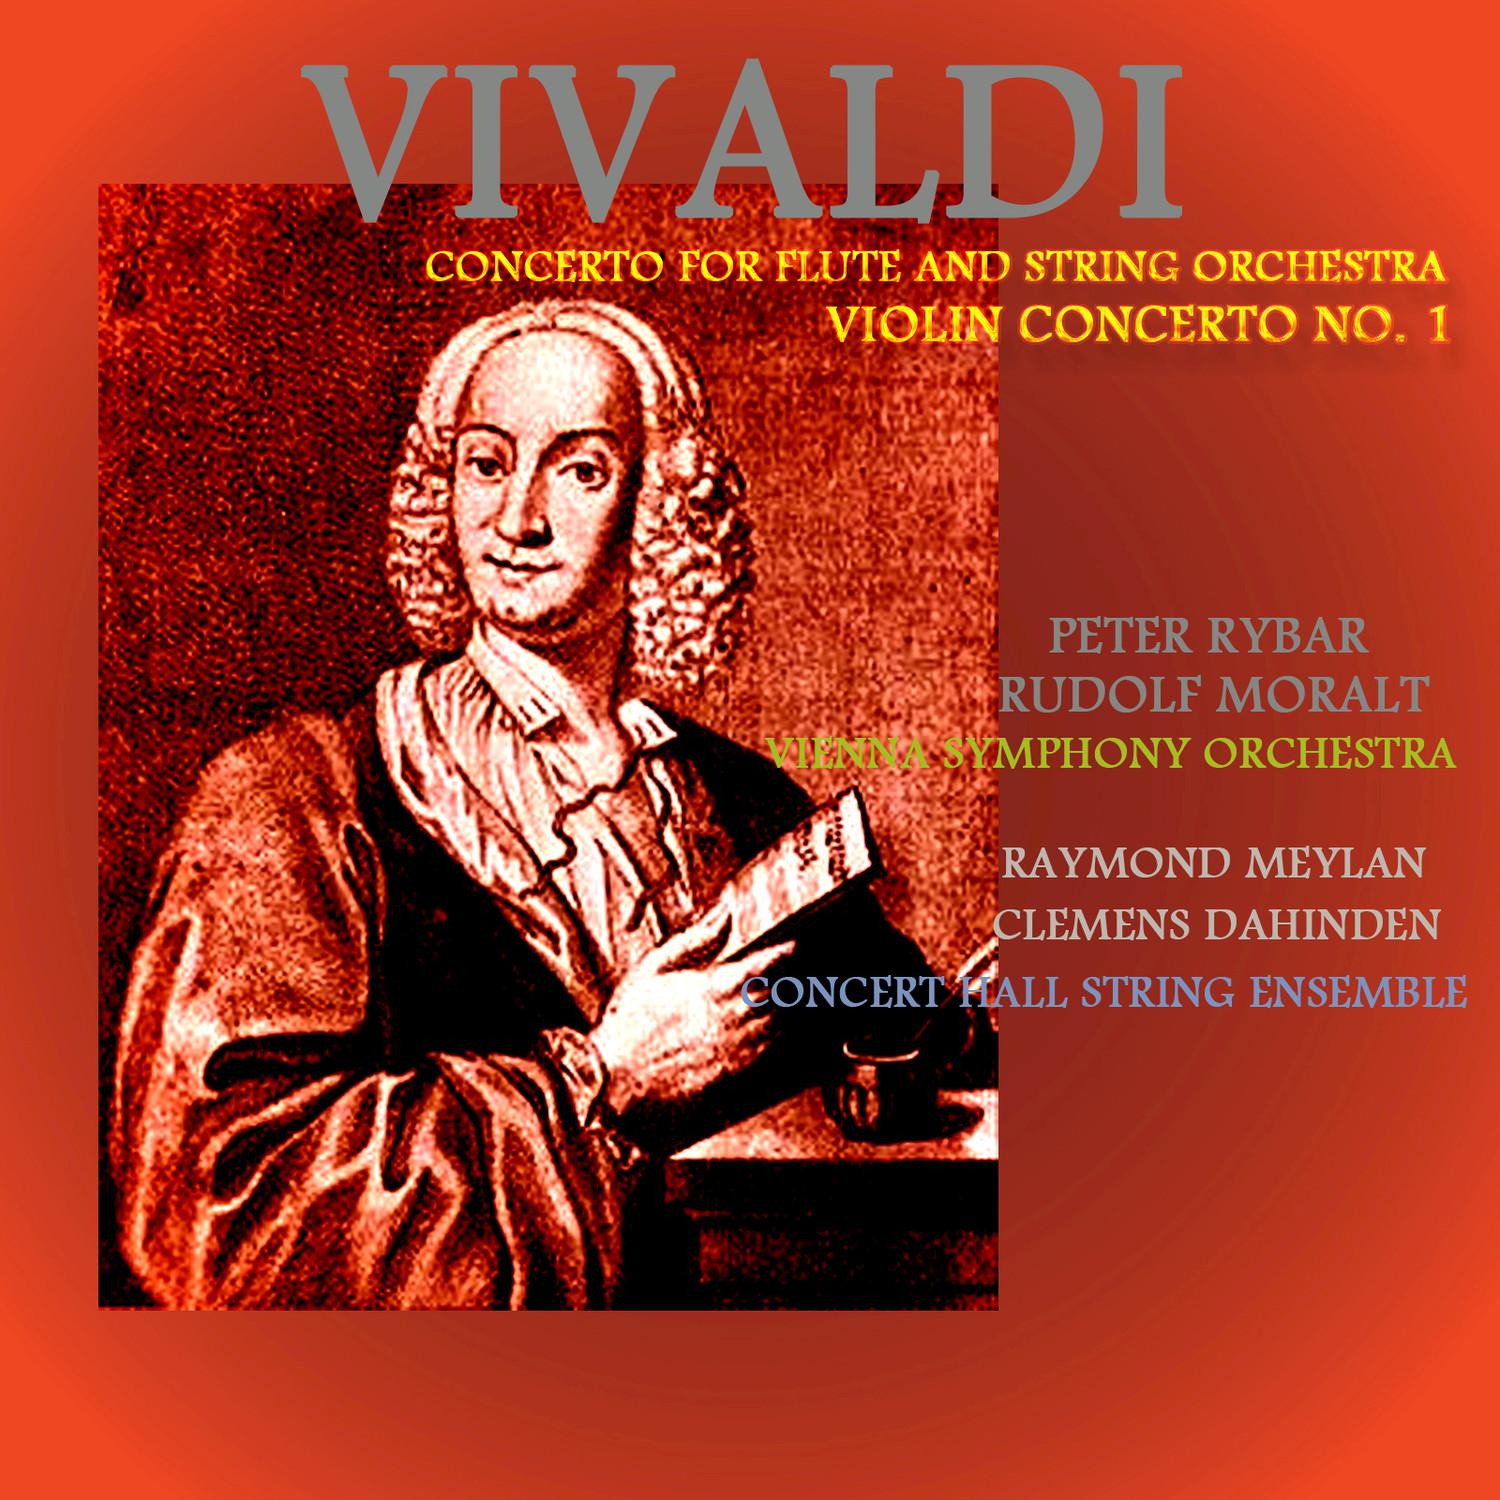 Violin Concerto No. 1 In G Minor, Op. 12, Rv 317: III. Allegro